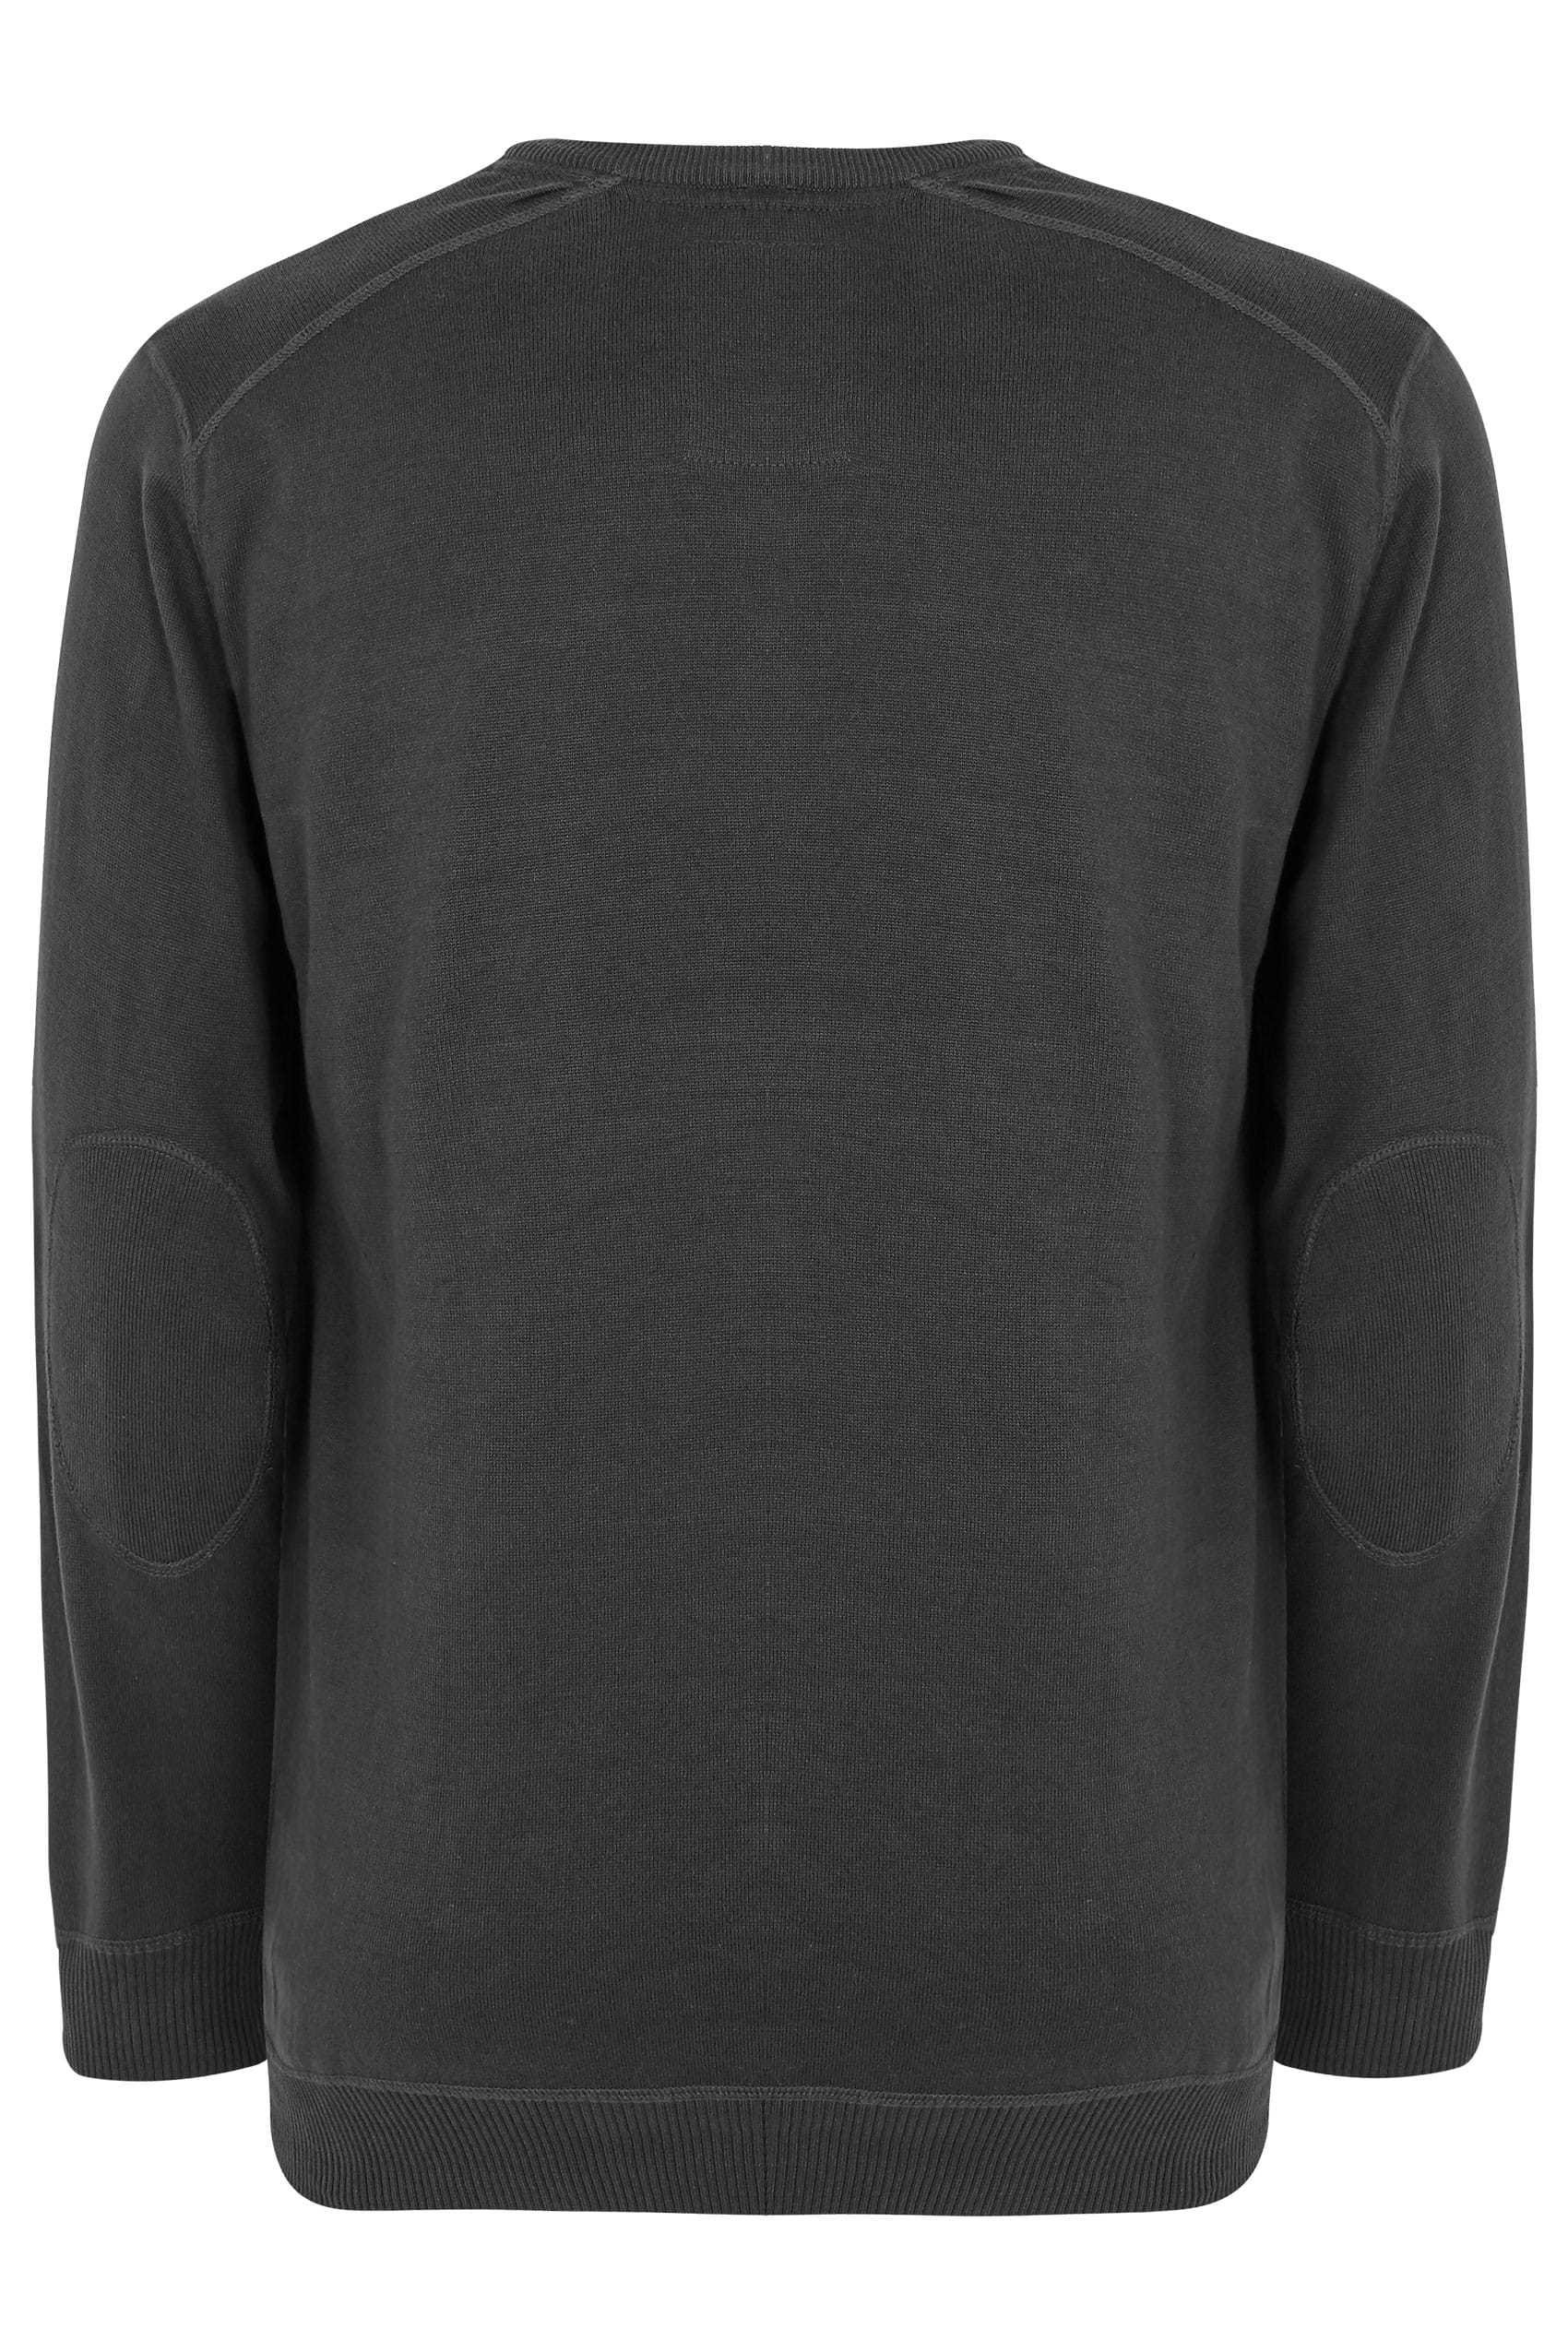 Download Charcoal Grey Fine Knit V-Neck Jumper With Mock T-Shirt ...